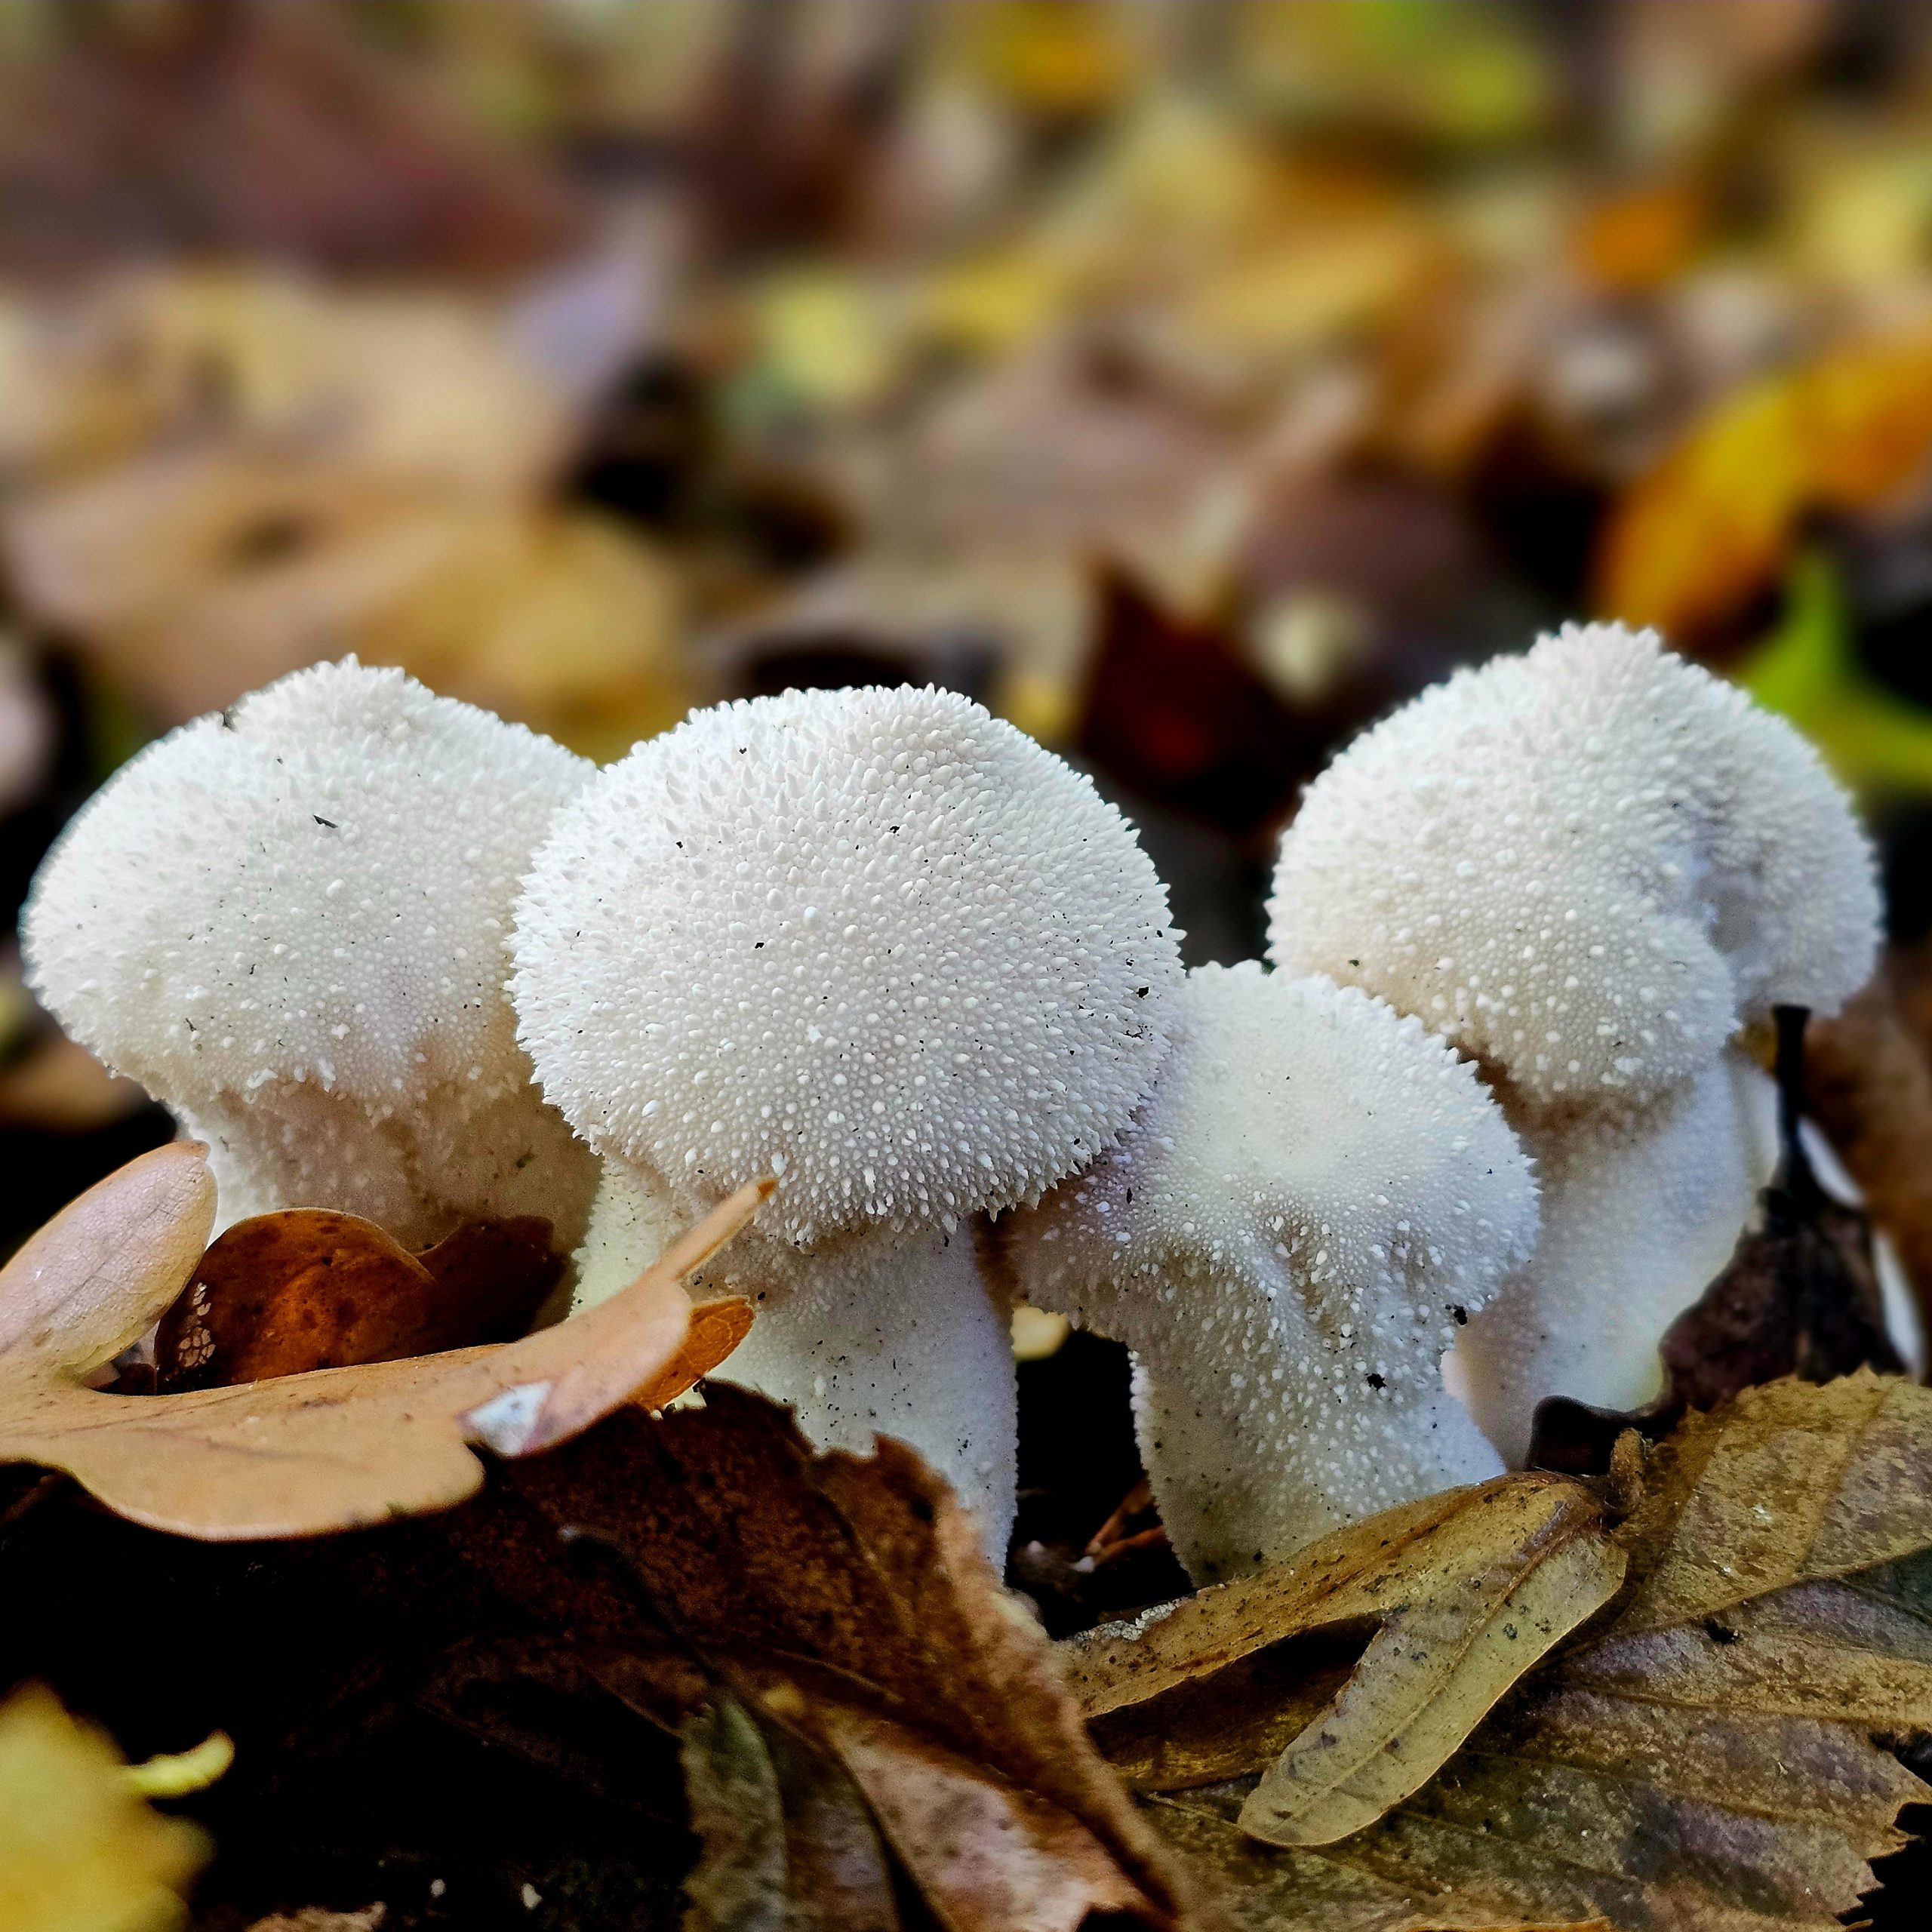 Gruppo di funghi